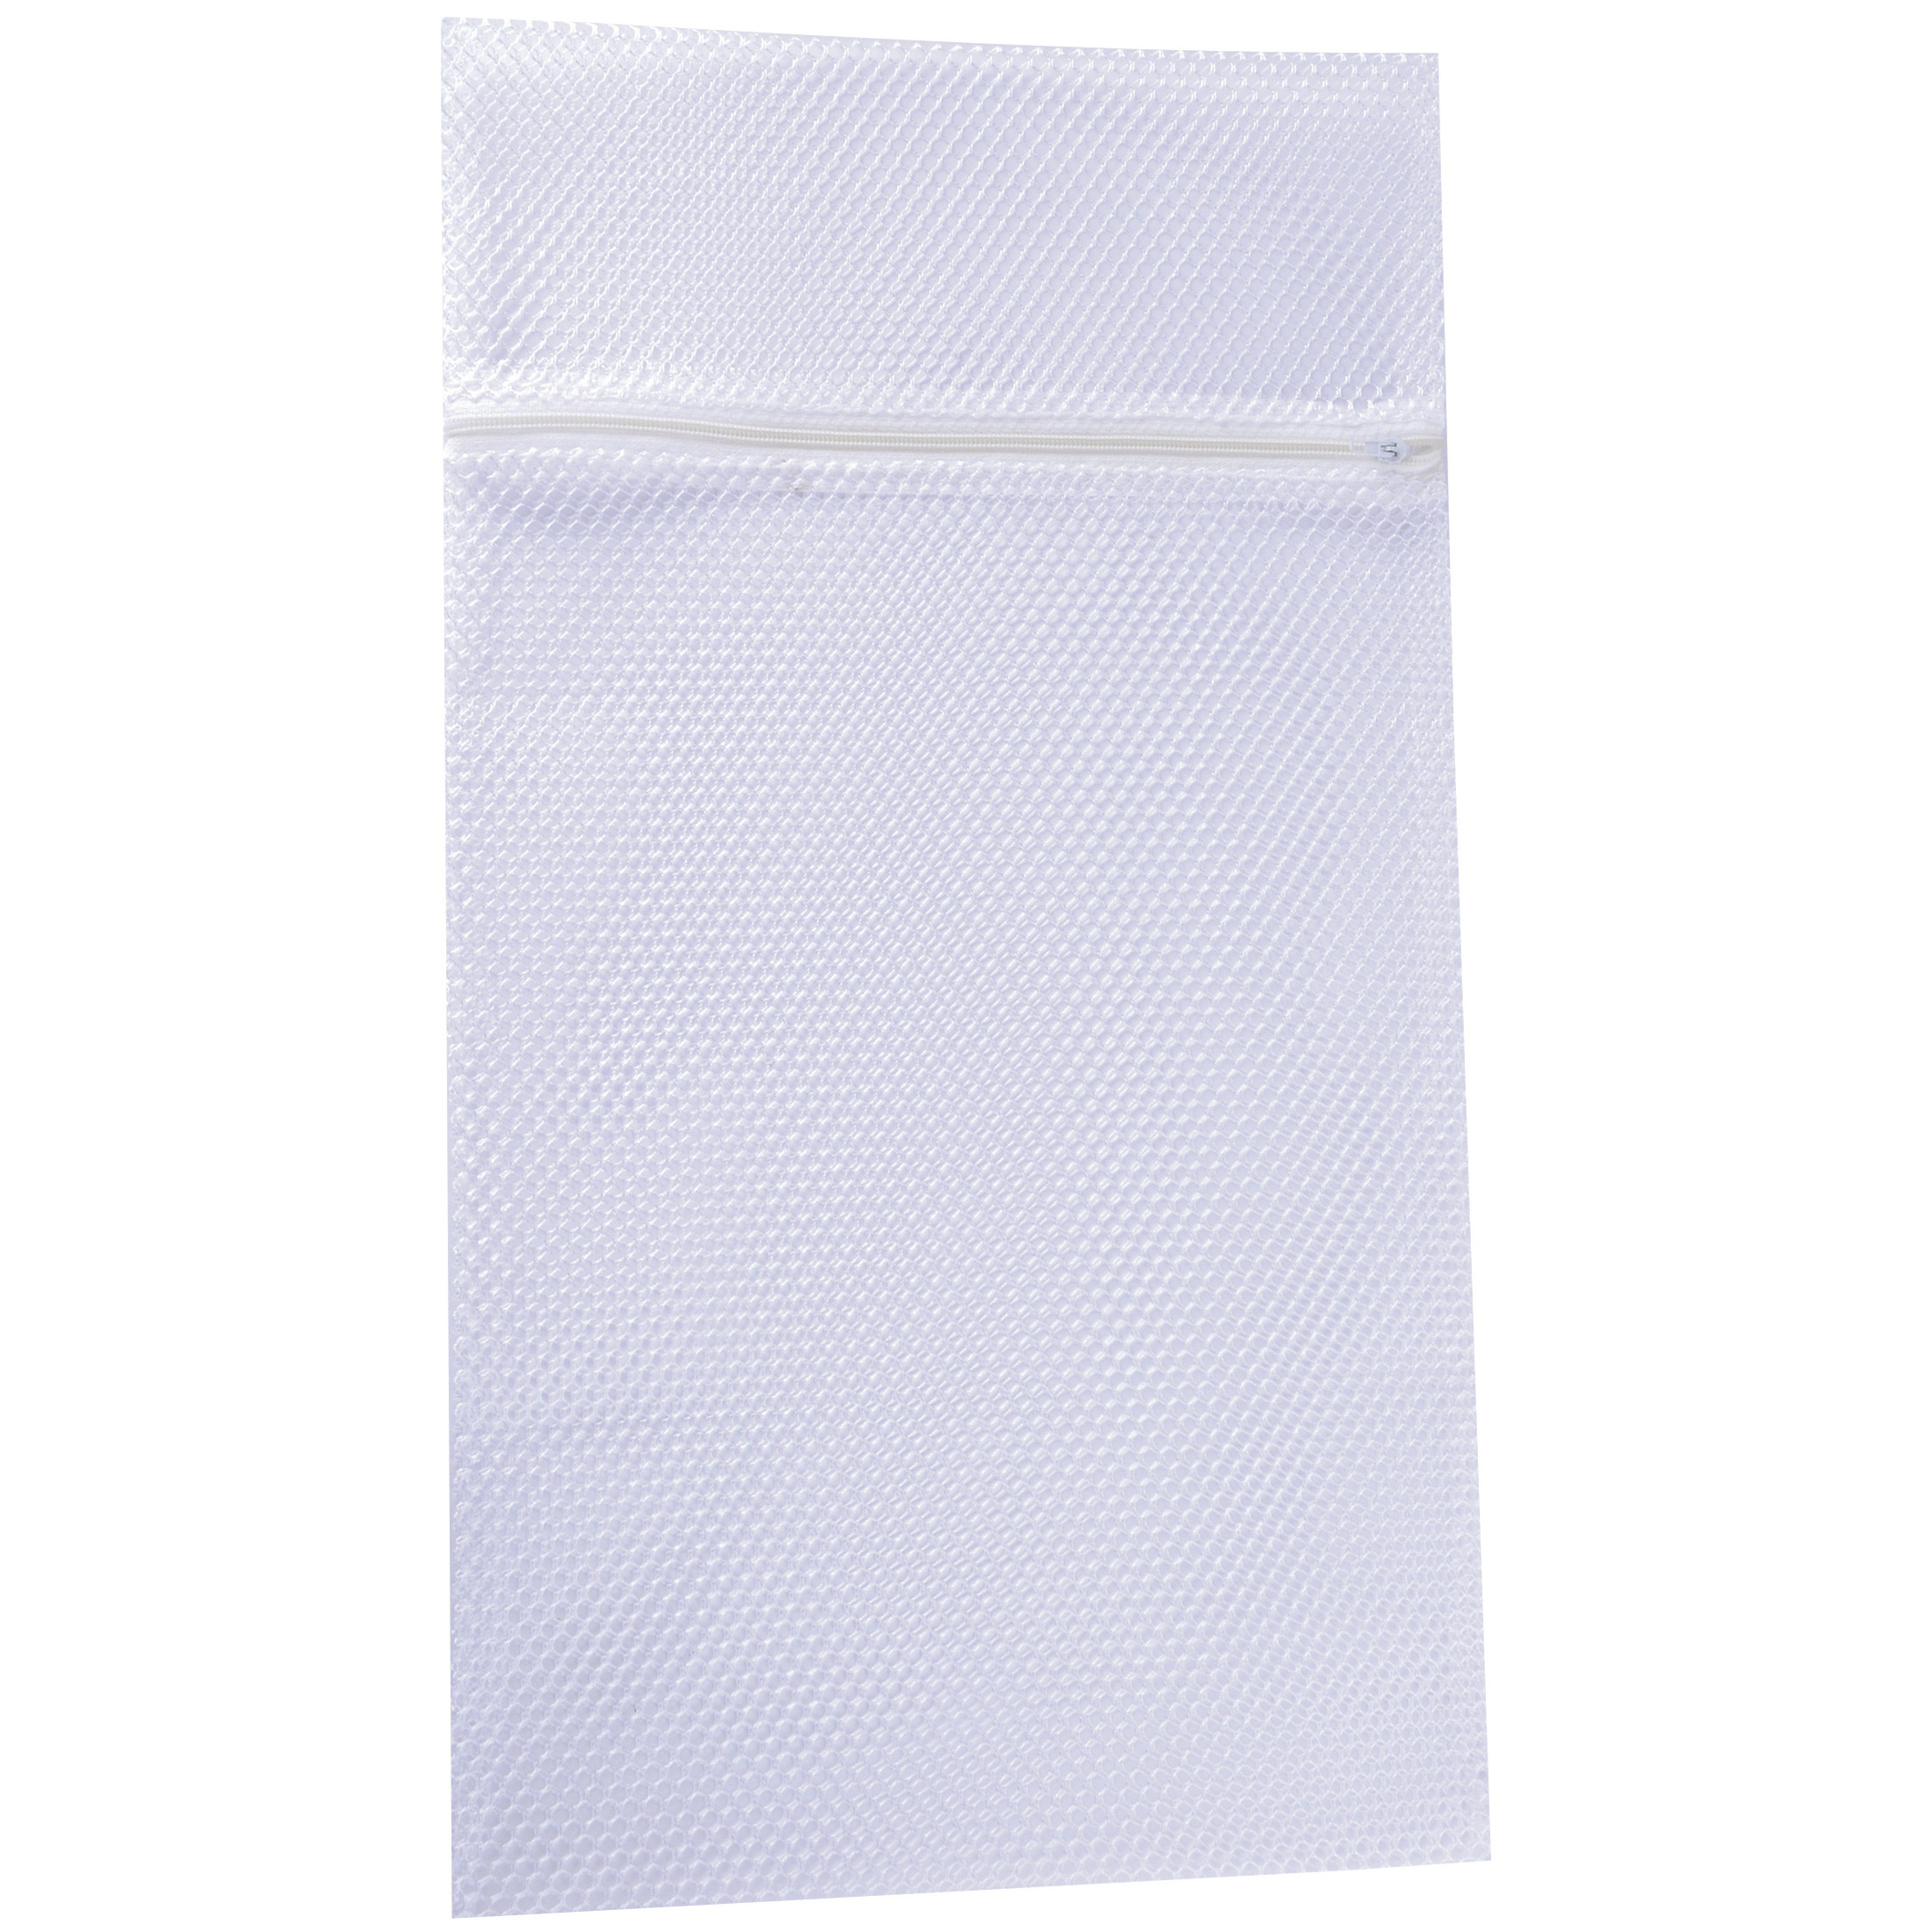 MSV Waszak voor kwetsbare kleding wasgoed/waszak - wit - size - 60 x 90 cm -